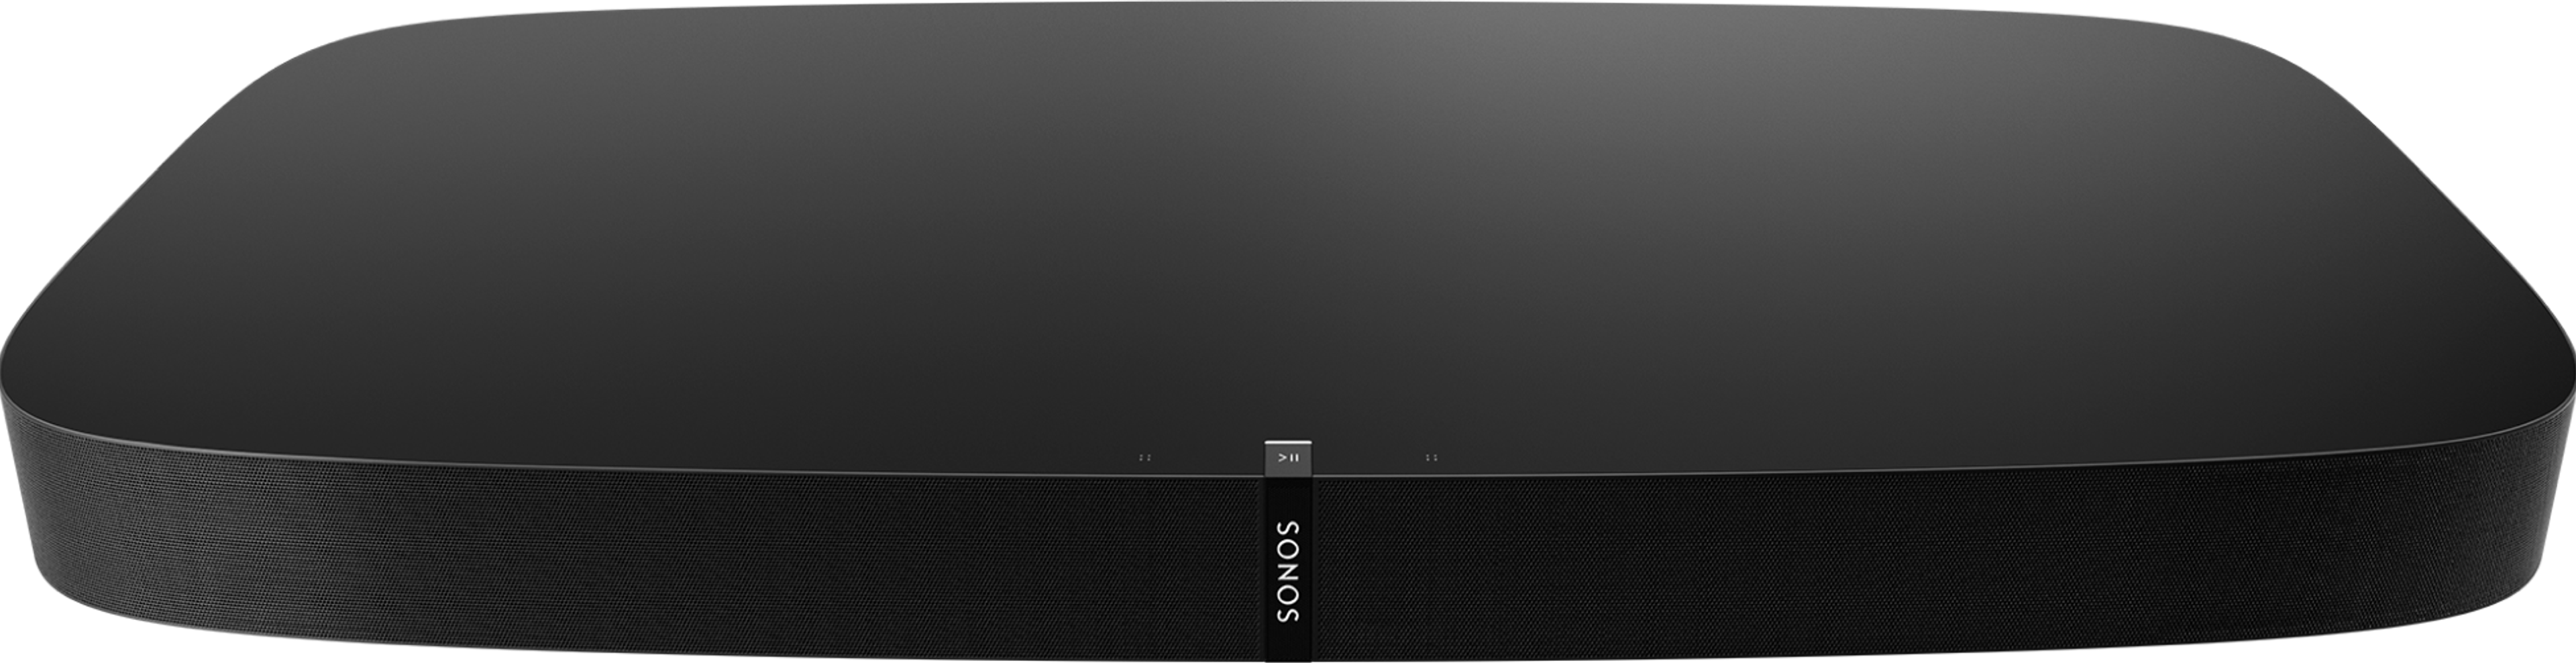 Sonos dévoile une nouvelle base enceinte TV, la PlayBase - Le